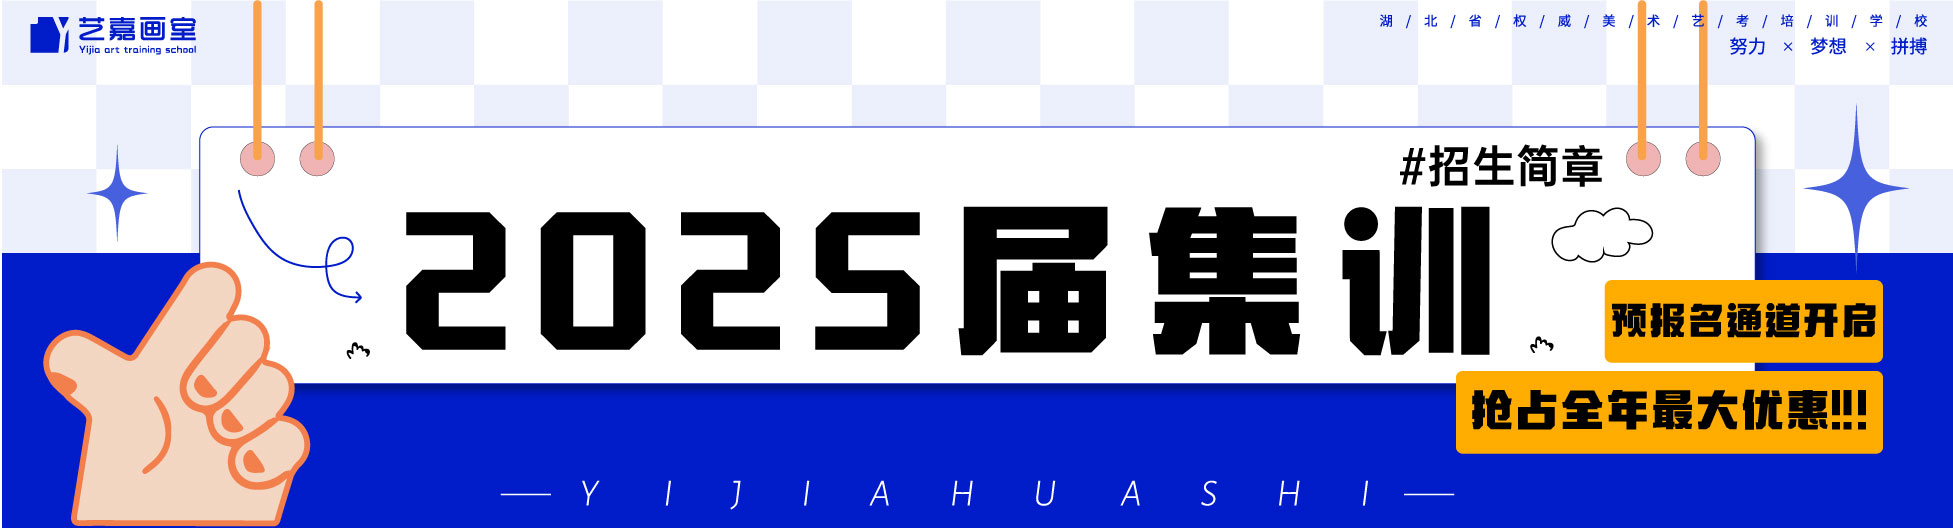 清华大学banner.jpg